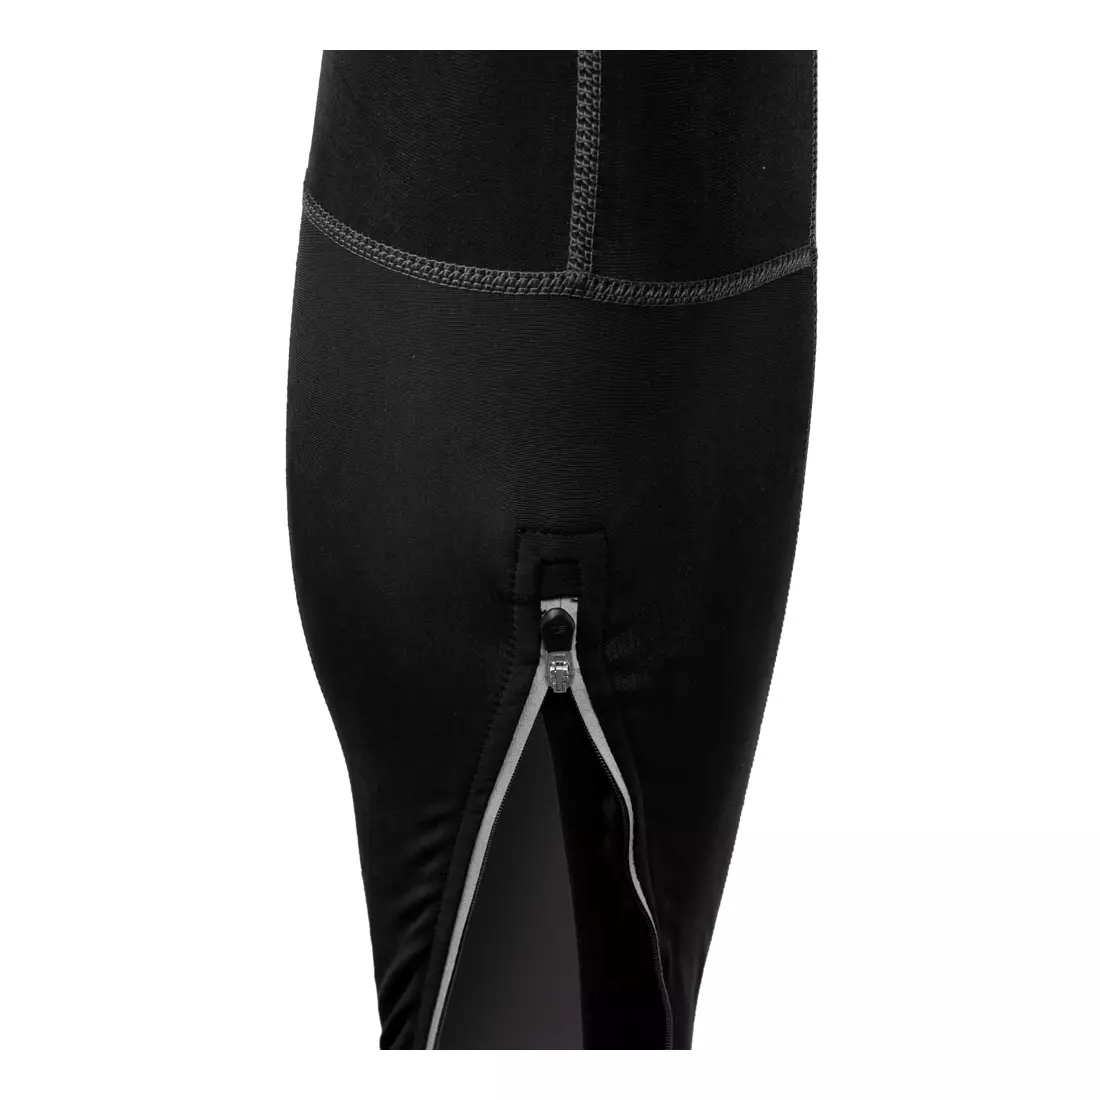 NEWLINE BIKE ROUBAIX OVERALL - sportovní kalhoty s náprsenkou 21417-060